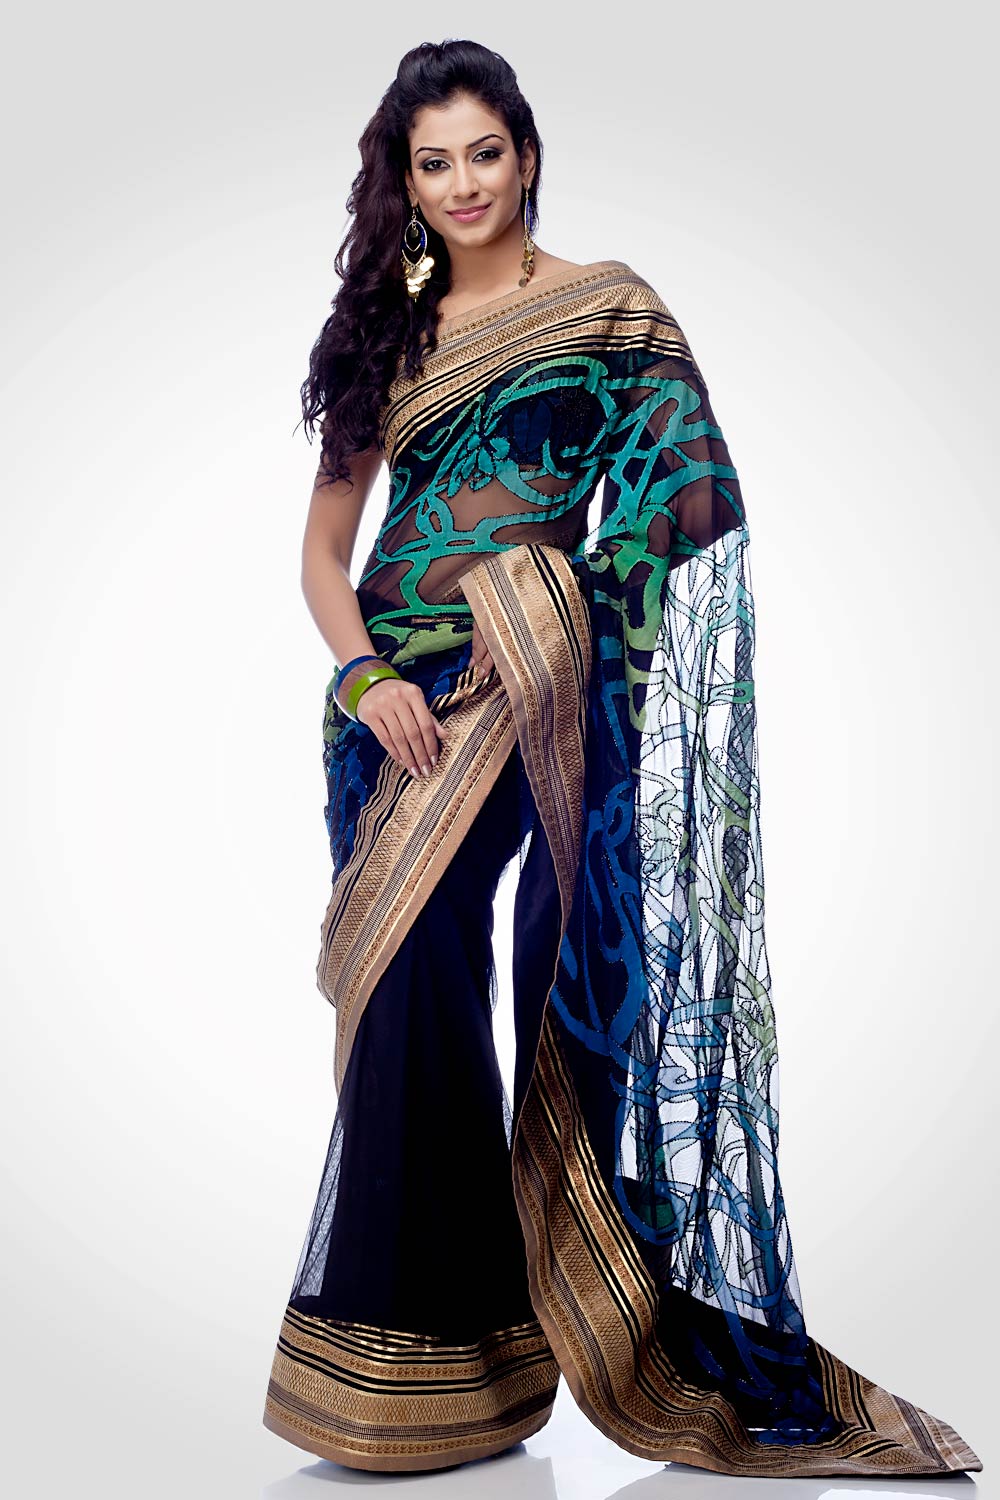 Models Saree Photos | Actress Saree Photos|Saree Photos|Hot Saree